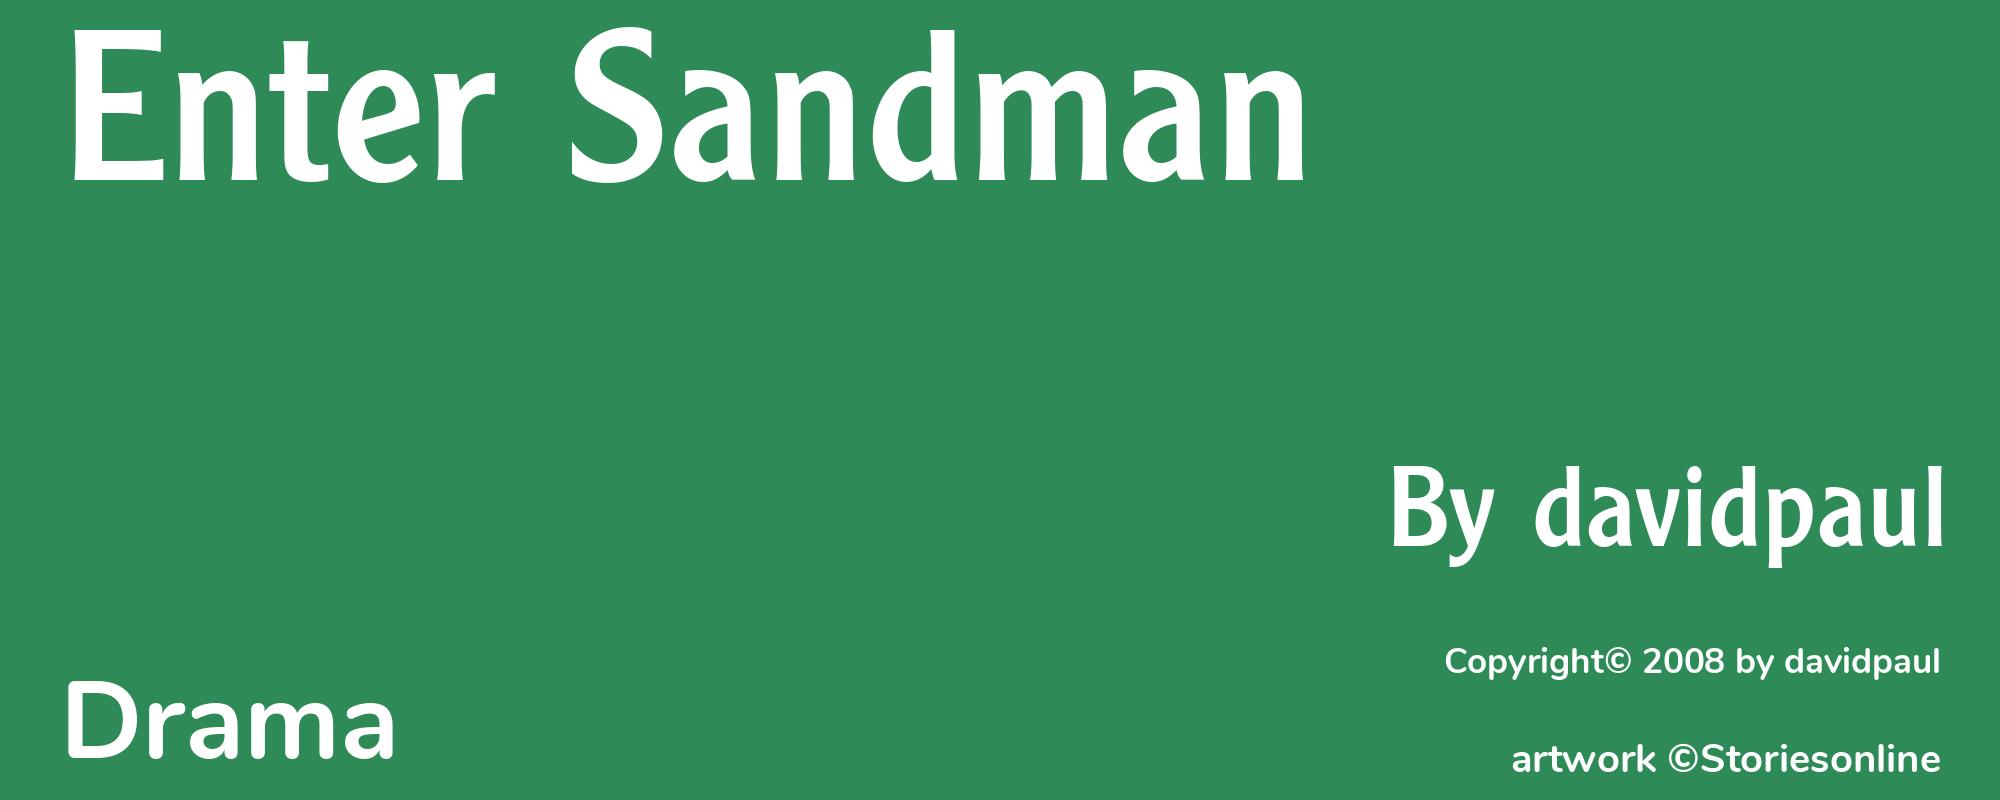 Enter Sandman - Cover